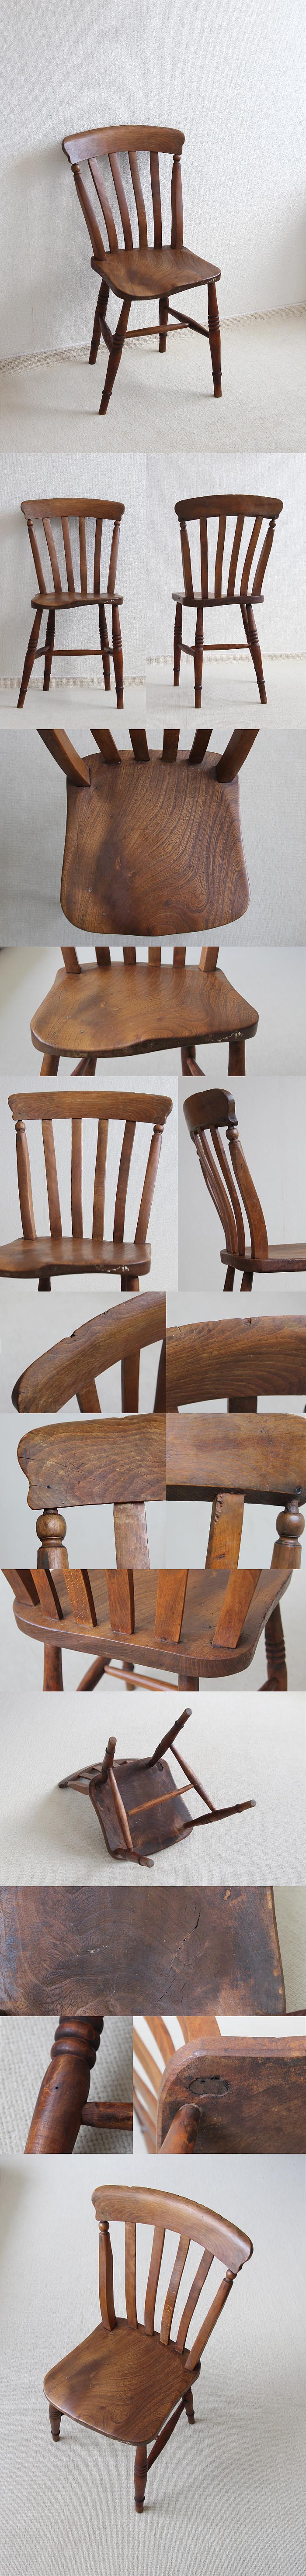 イギリス アンティーク ラスバックチェア 木製椅子 無垢材 英国 家具「キッチンチェア」V-560